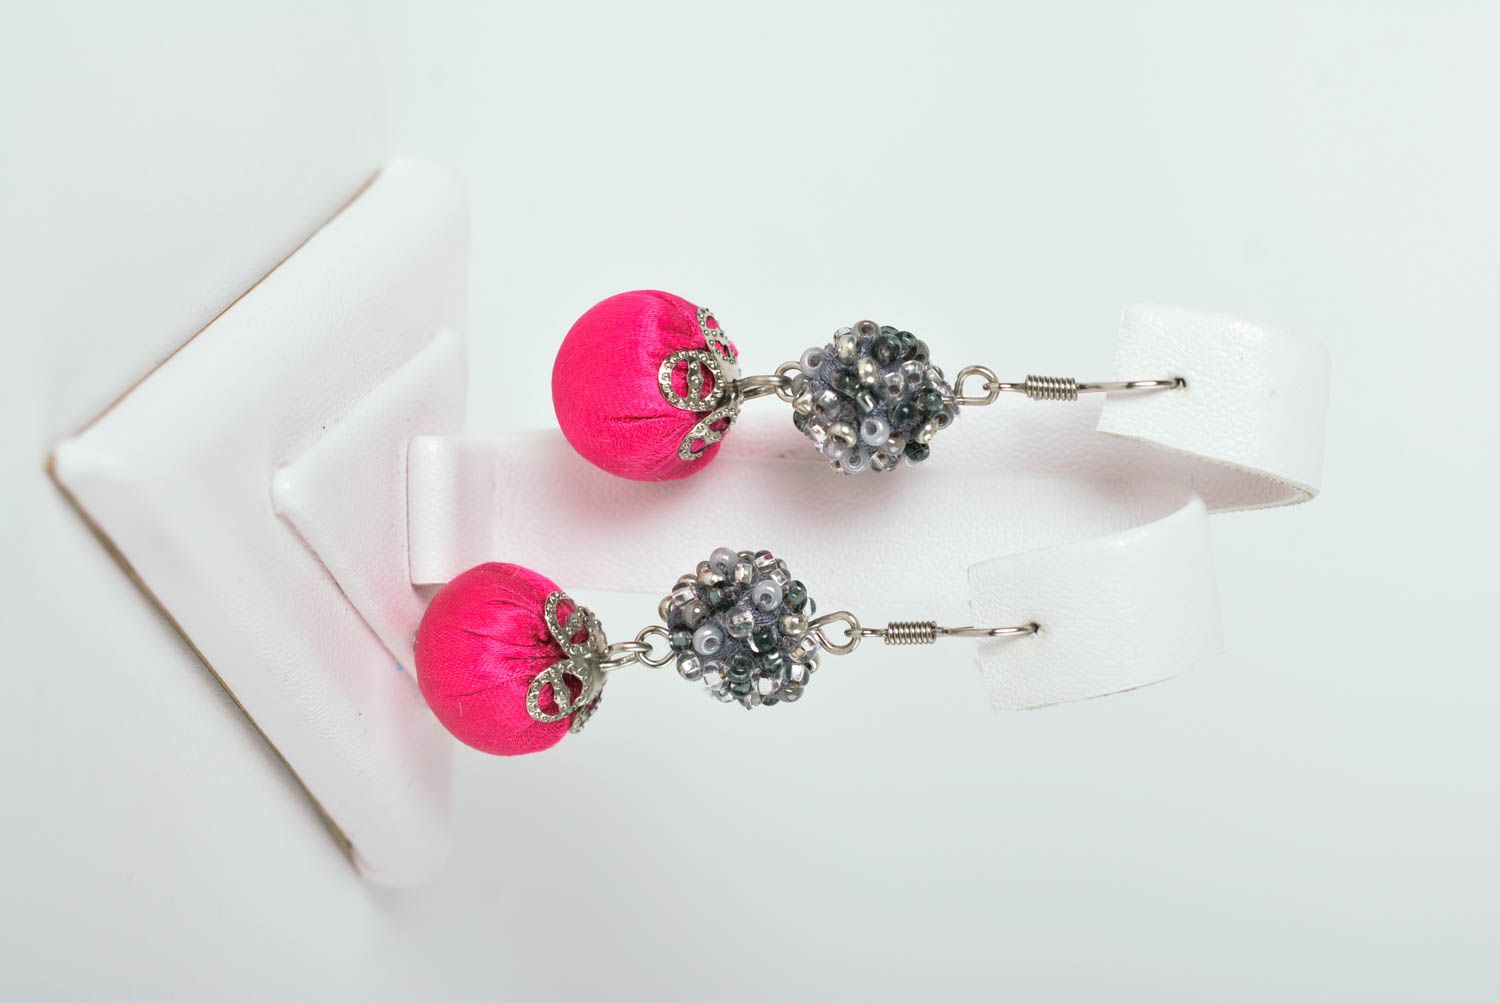 Handmade stylish earrings crimson earrings beaded textile earrings gift for her photo 1